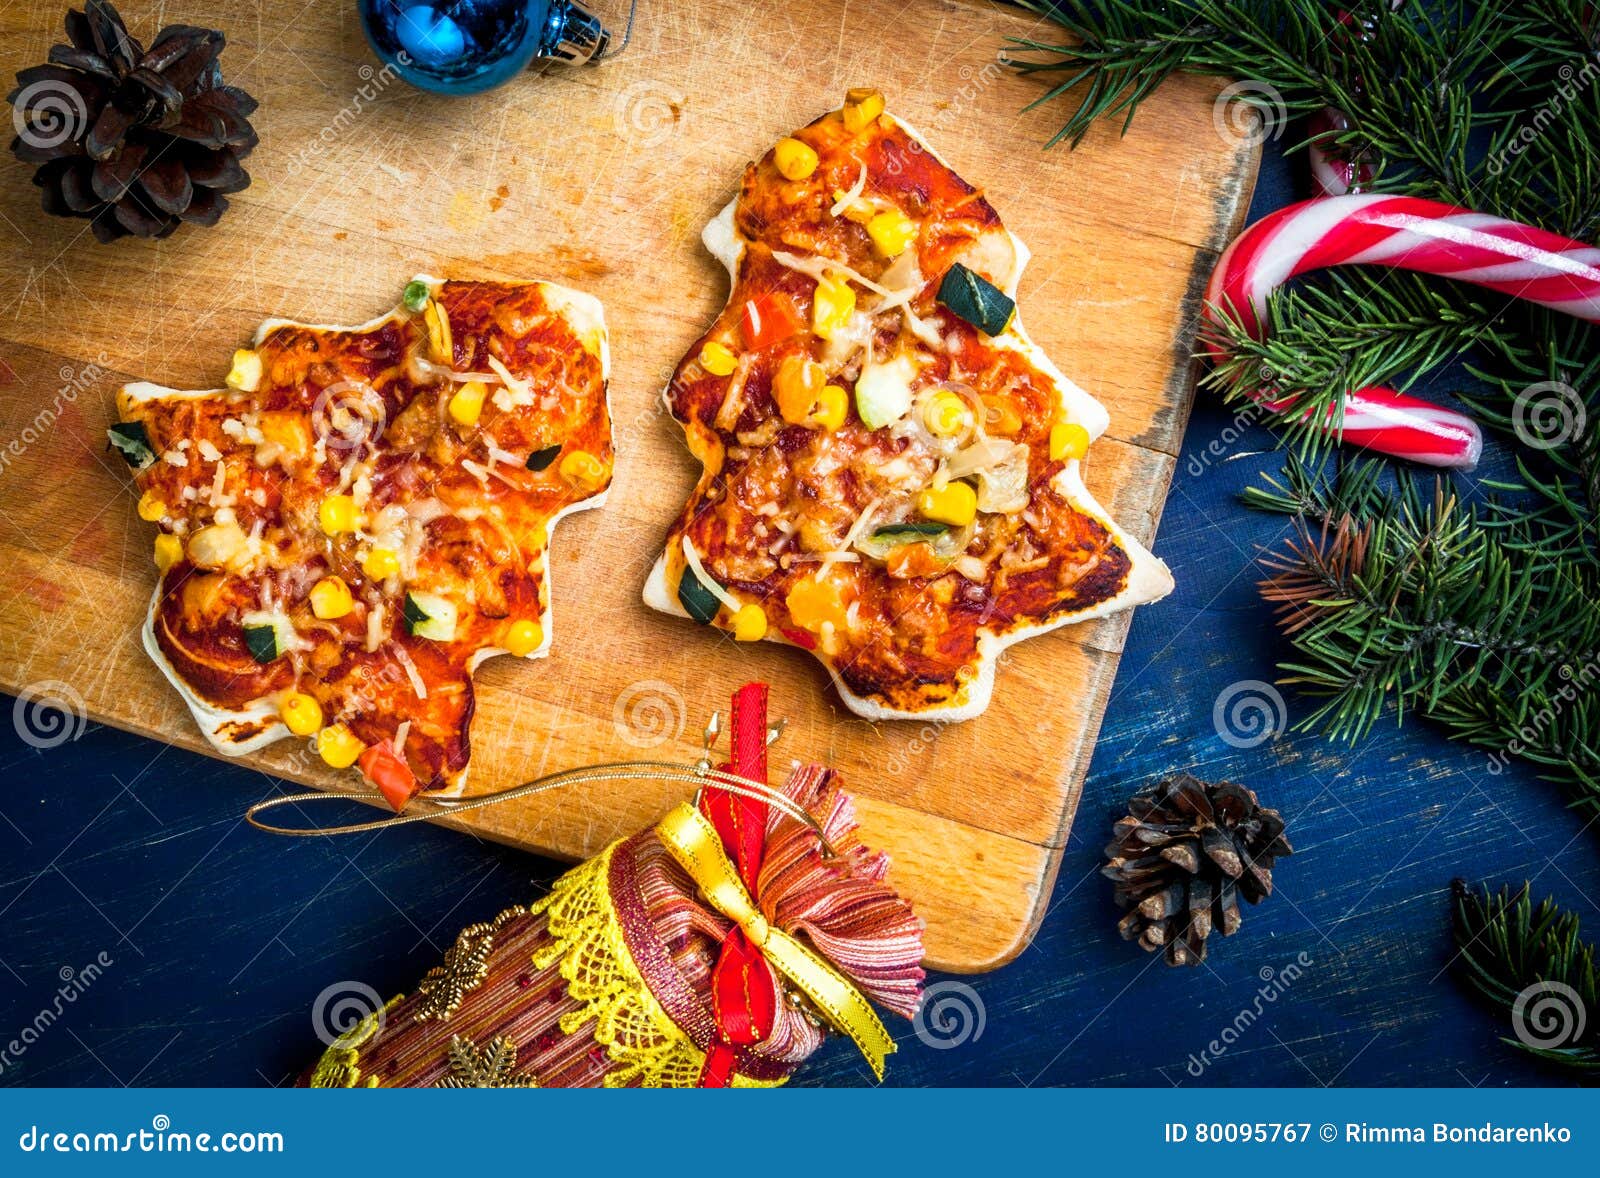 Repas Drôle De Noël Pour Des Enfants Image Stock Image Du